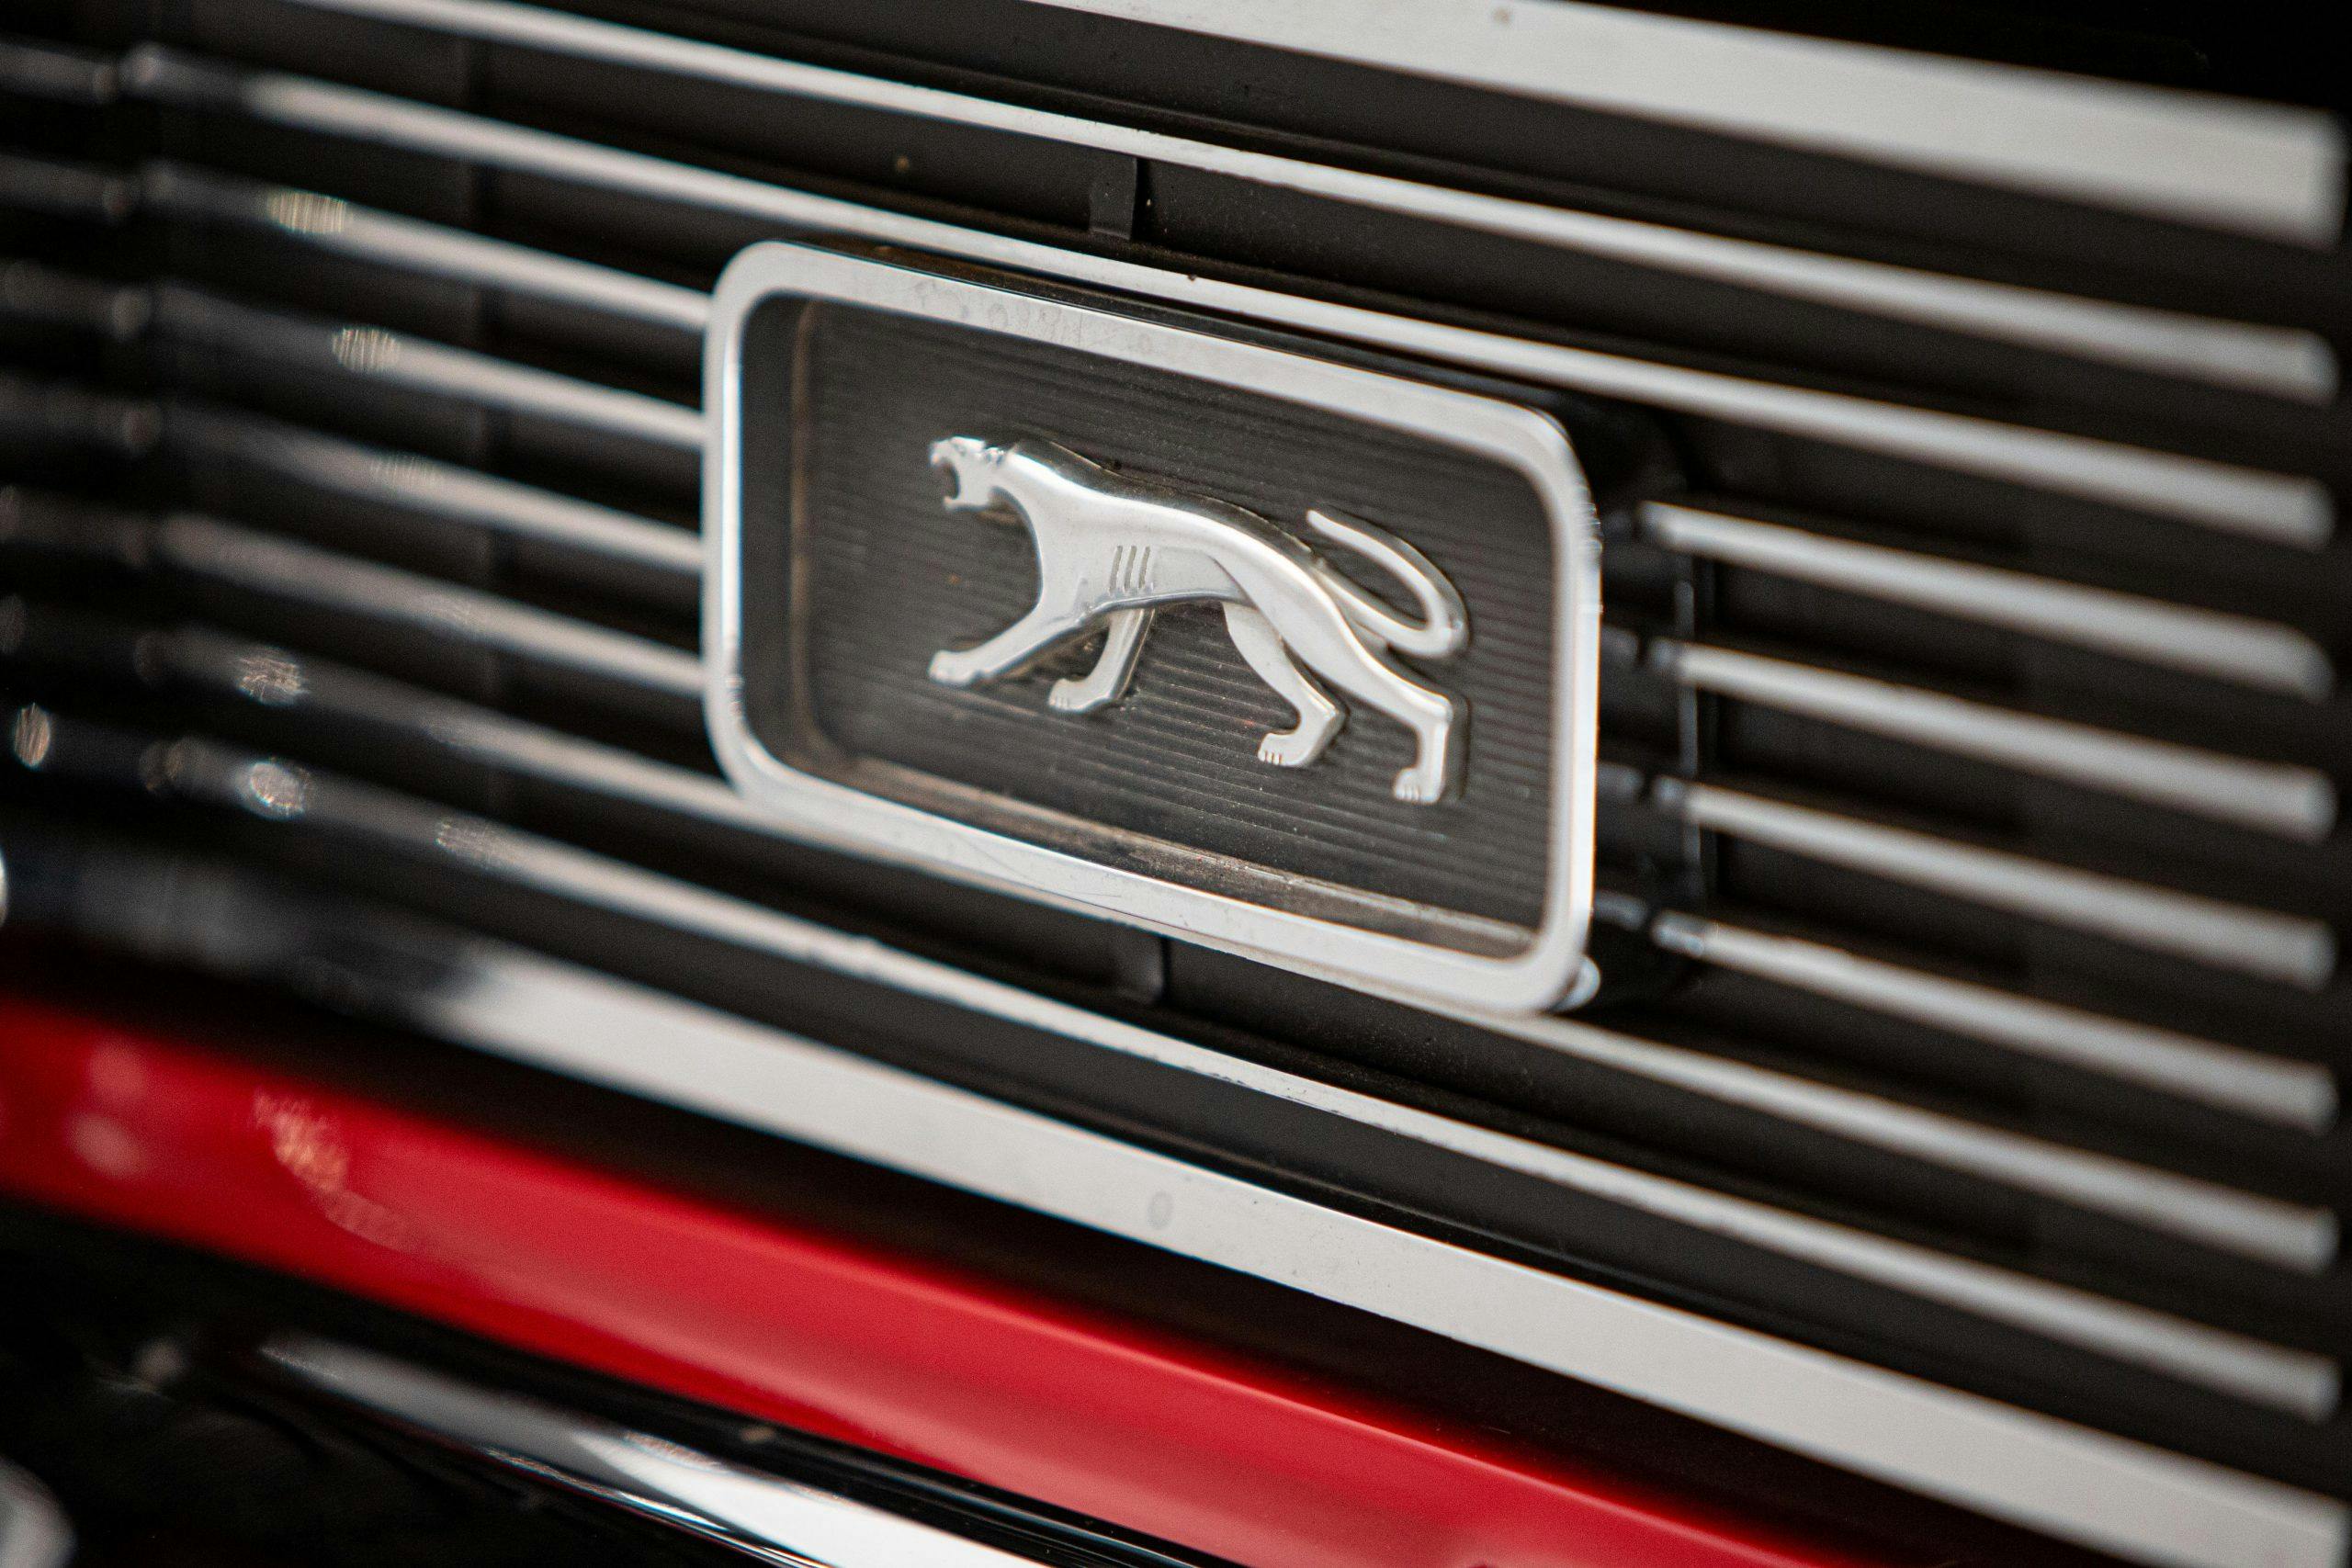 Mercury Cougar Convertible emblem